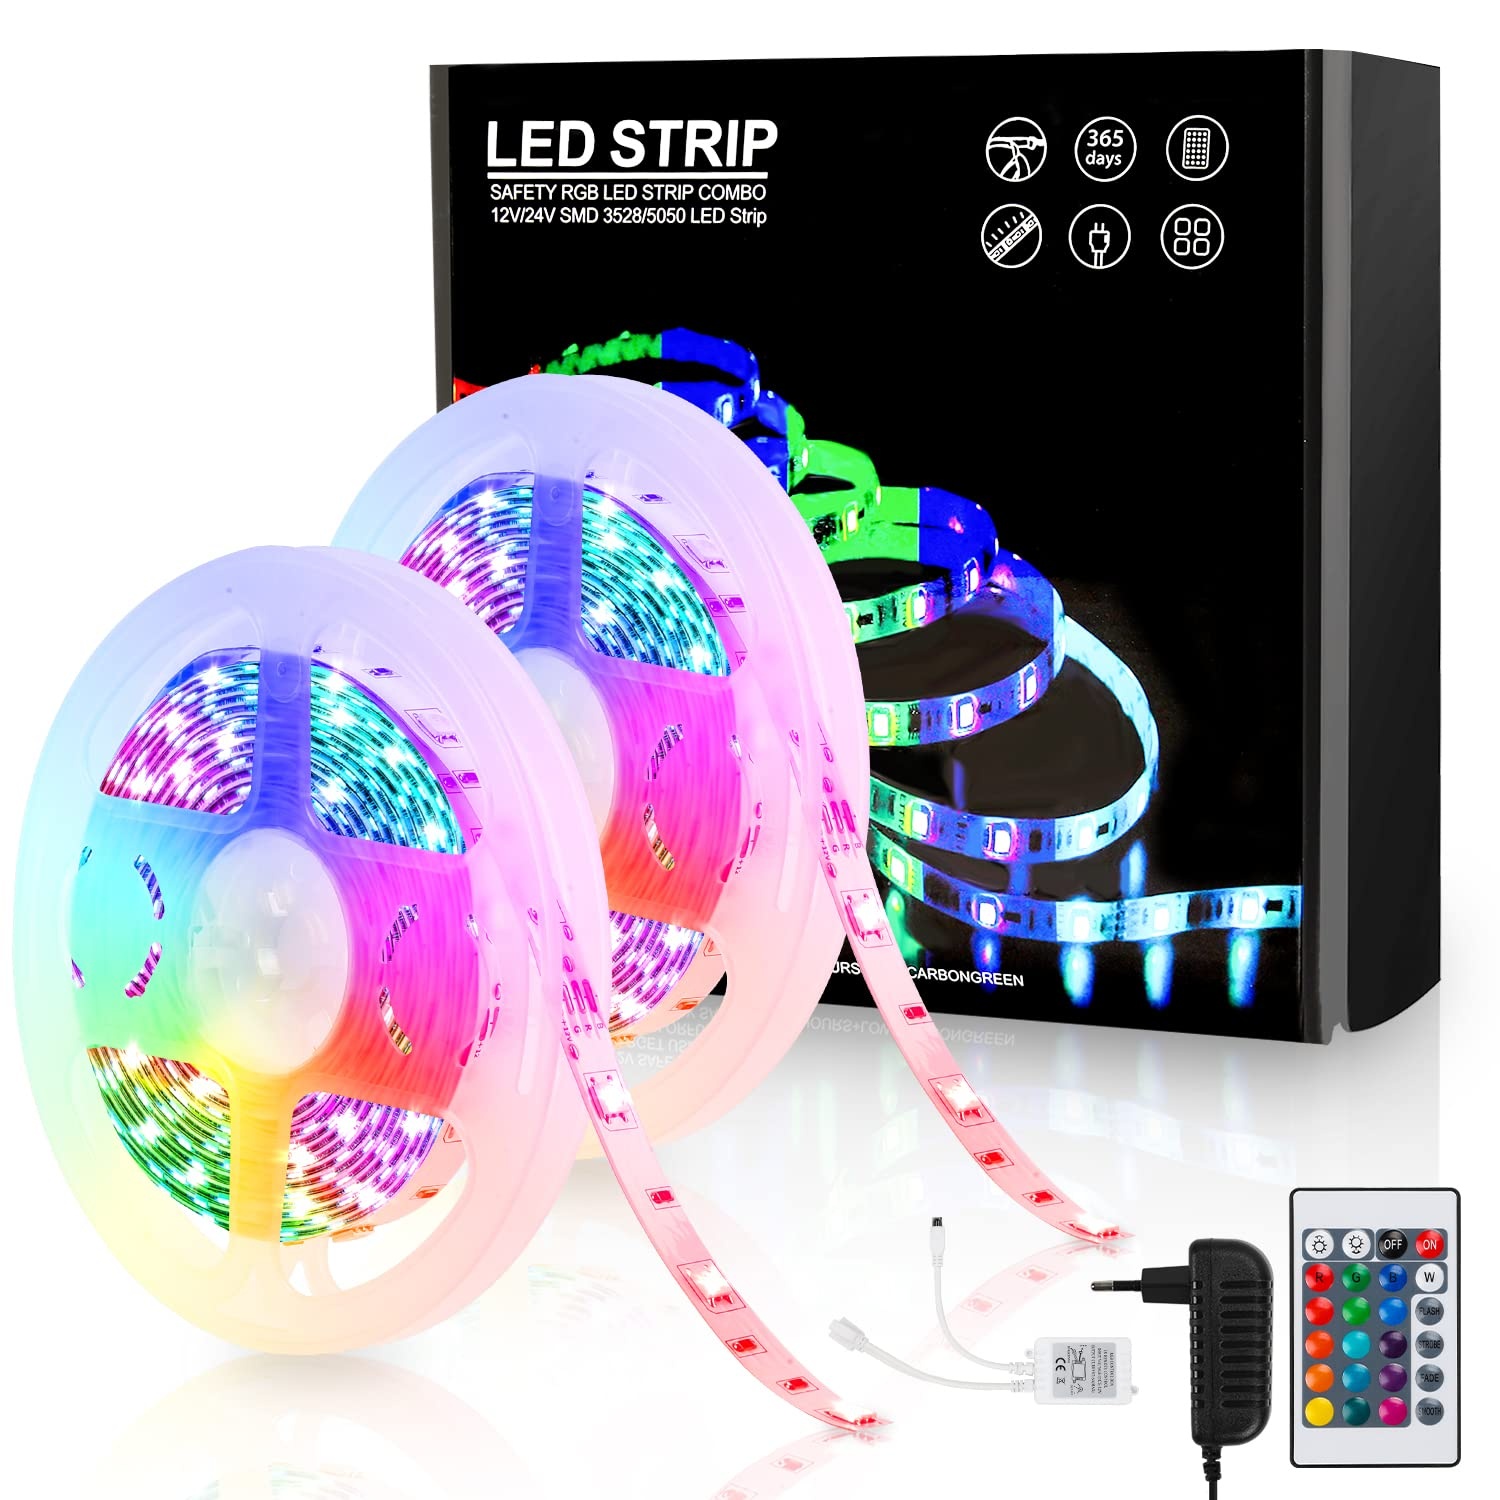 Jopassy LED Streifen 20M,RGB LED Strip Selbstklebend SMD 5050,Farbwechsel led band mit Fernbedienung rgb LED lichtband Leiste für die Beleuchtung von Haus,Party,Küche,TV Hintergrundbeleuchtung